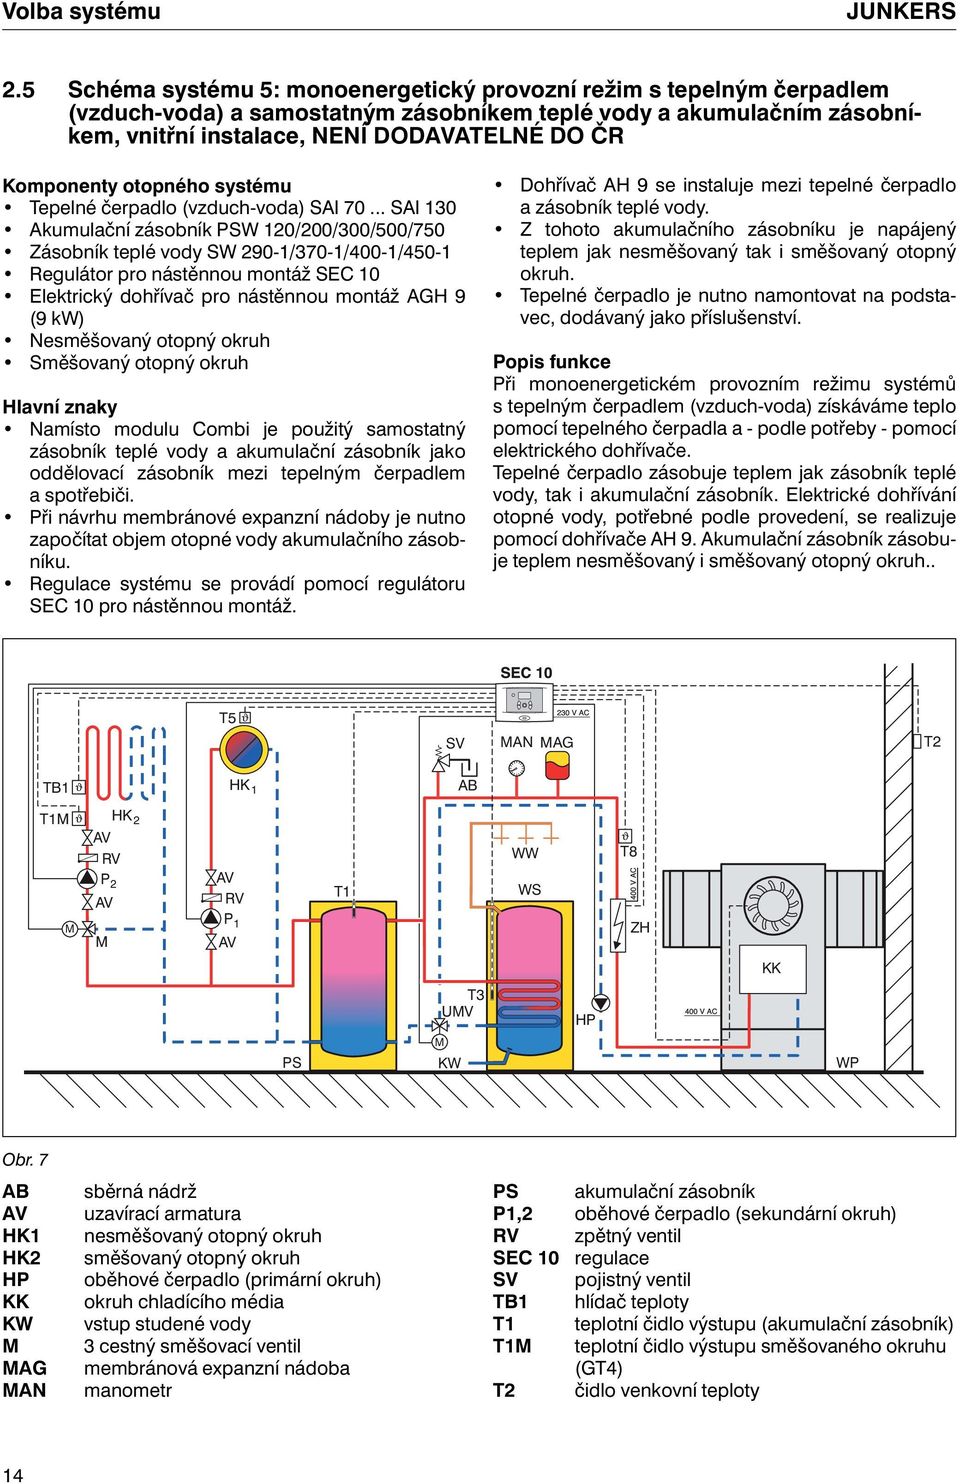 Komponenty otopného systému Tepelné čerpadlo (vzduch-voda) SAI 70.